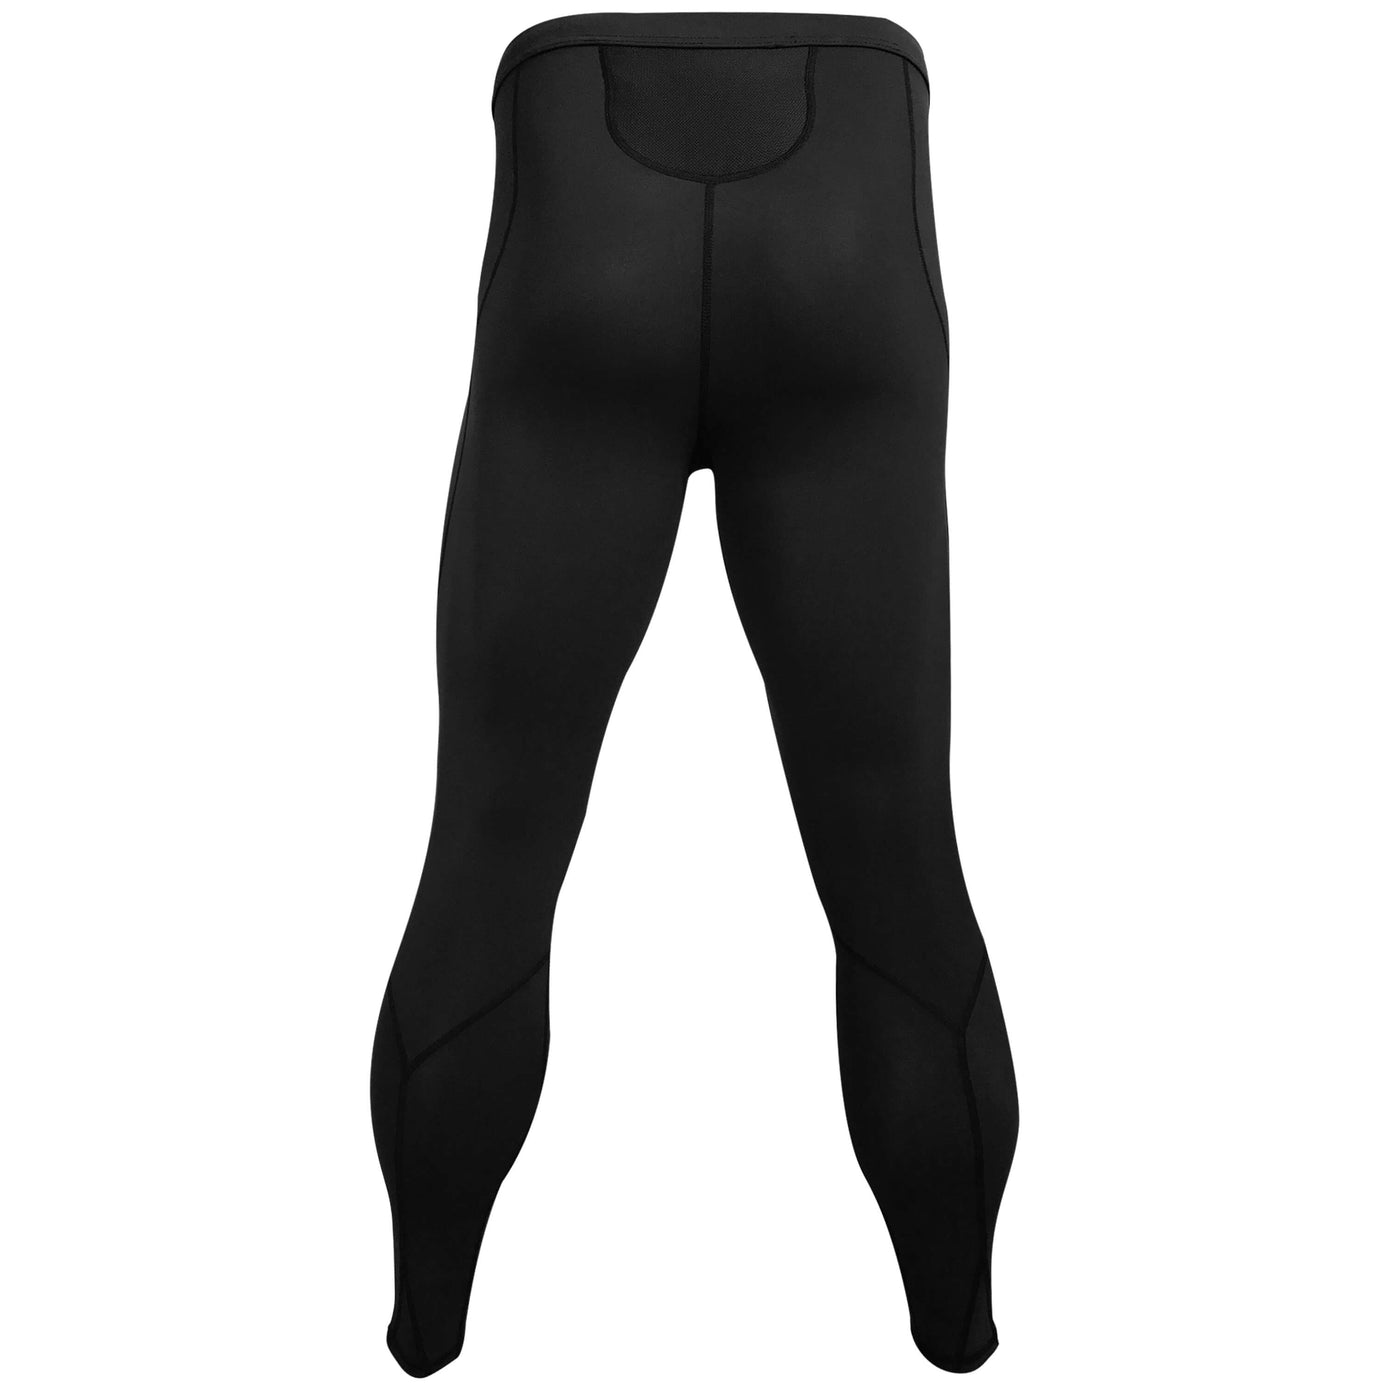 https://www.platinumsun.com/cdn/shop/products/men_s-swim-leggings-back_1400x.jpg?v=1698938198